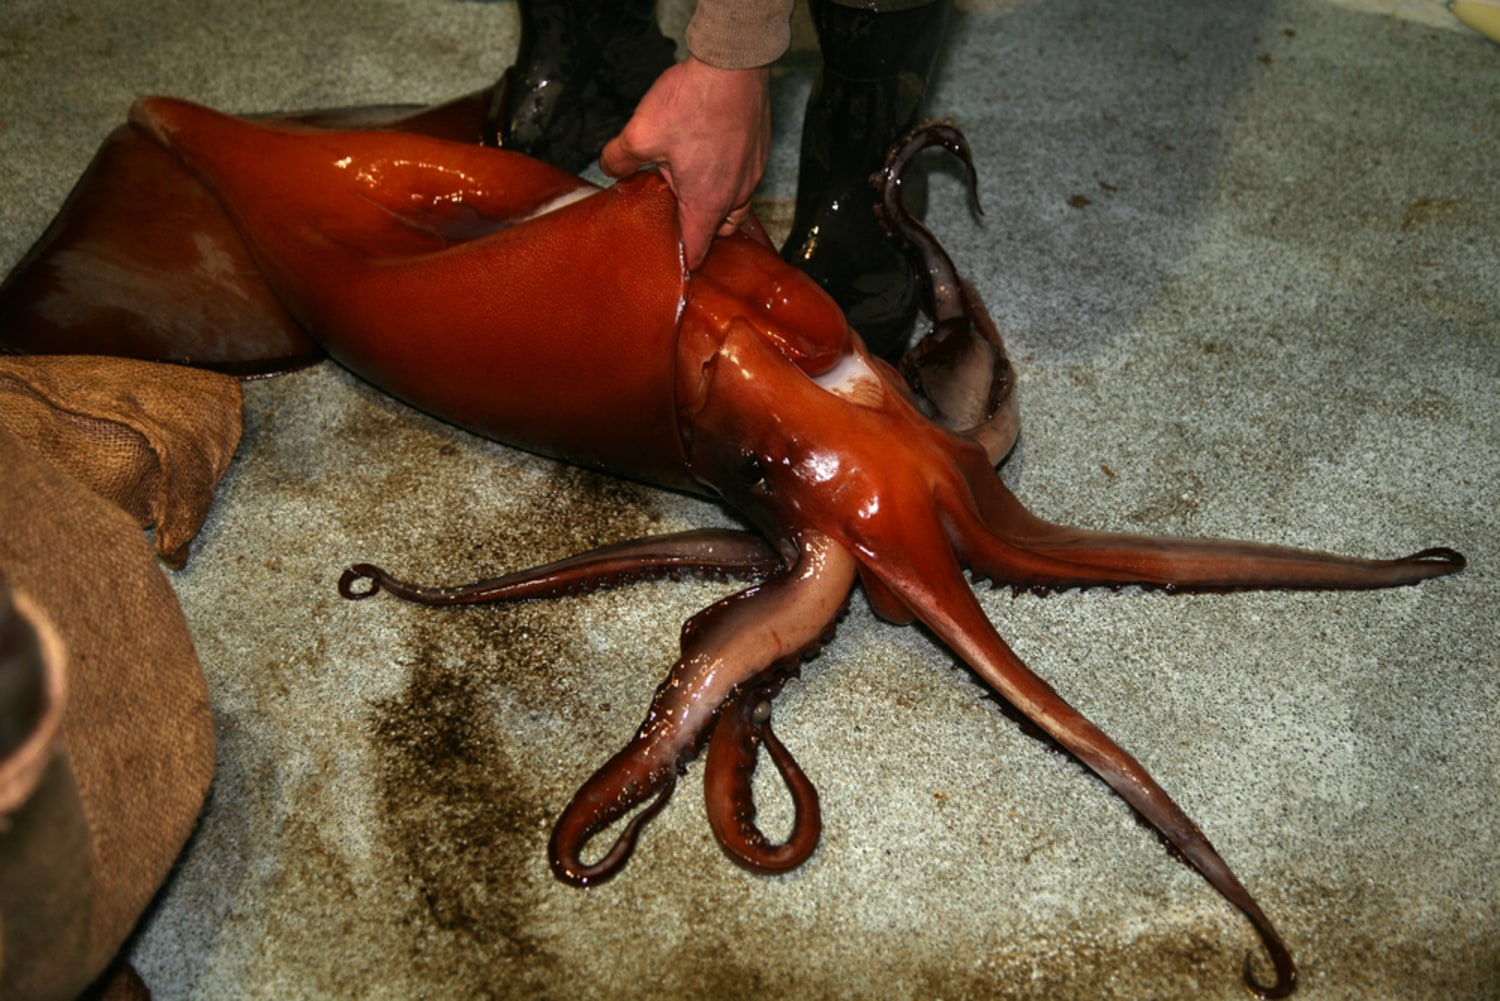 It's squid season on Monterey Bay, Stories